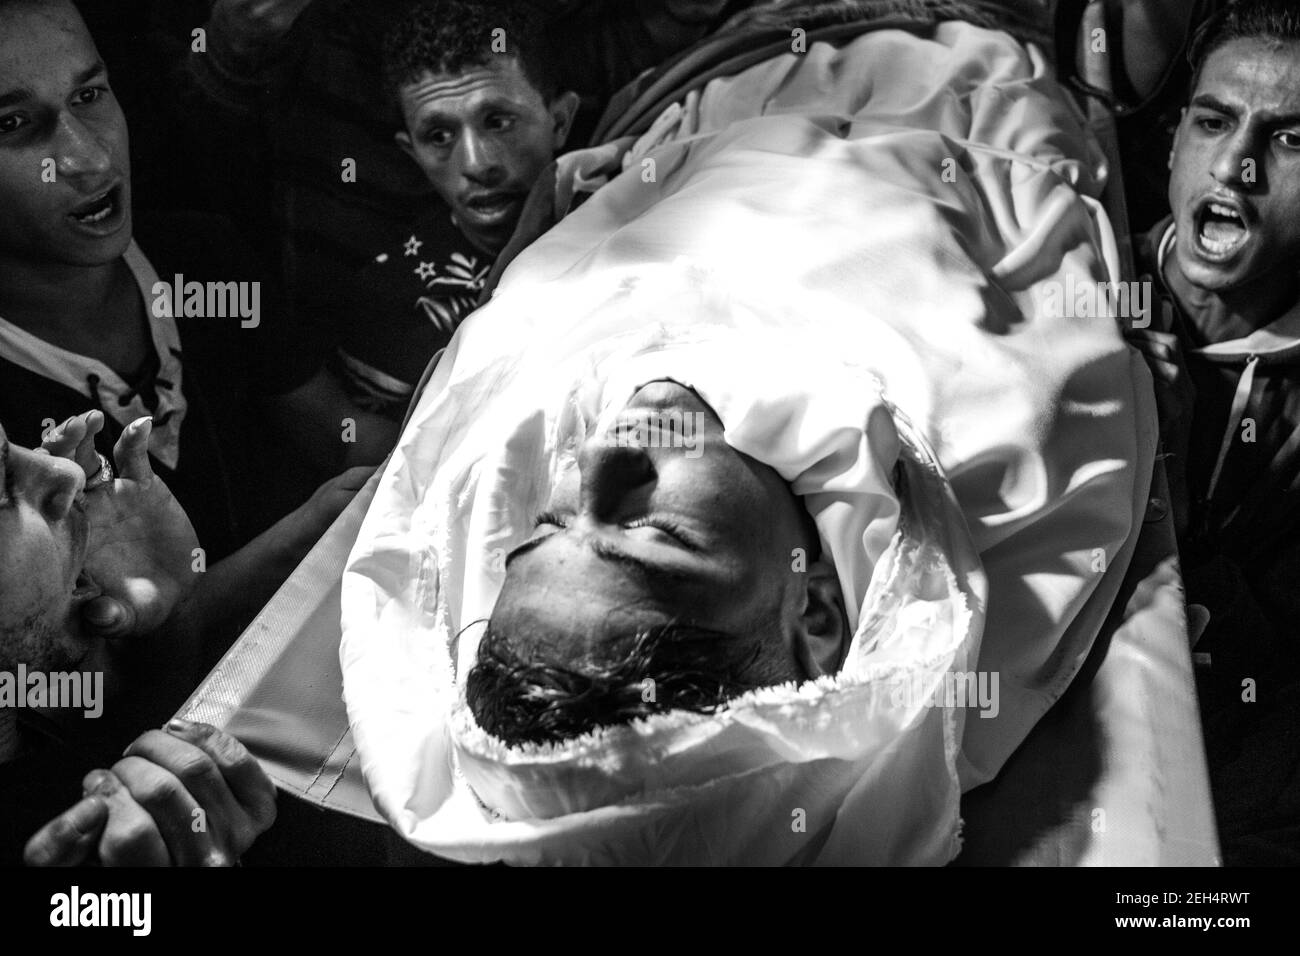 Des amis et des membres de la famille pleurent sur le corps de Jamal Affana (15 ans) après qu'il est mort d'une blessure par balle lors de manifestations vendredi dernier à la clôture frontalière de Gaza avec Israël le 13 mai 2018 à Rafah, à Gaza. Jamal a été tué vendredi par un sniper israélien alors qu'il participait aux manifestations. Pour les 1.9 millions de Palestiniens vivant dans la bande de Gaza, la vie est devenue une lutte quotidienne pour la nourriture, l'électricité et l'argent après 10 ans de blocus israélien dans la région. Jusqu'à présent, les manifestations ont causé la mort de 40 Palestiniens et plus de 1,700 blessés par le bras israélien Banque D'Images